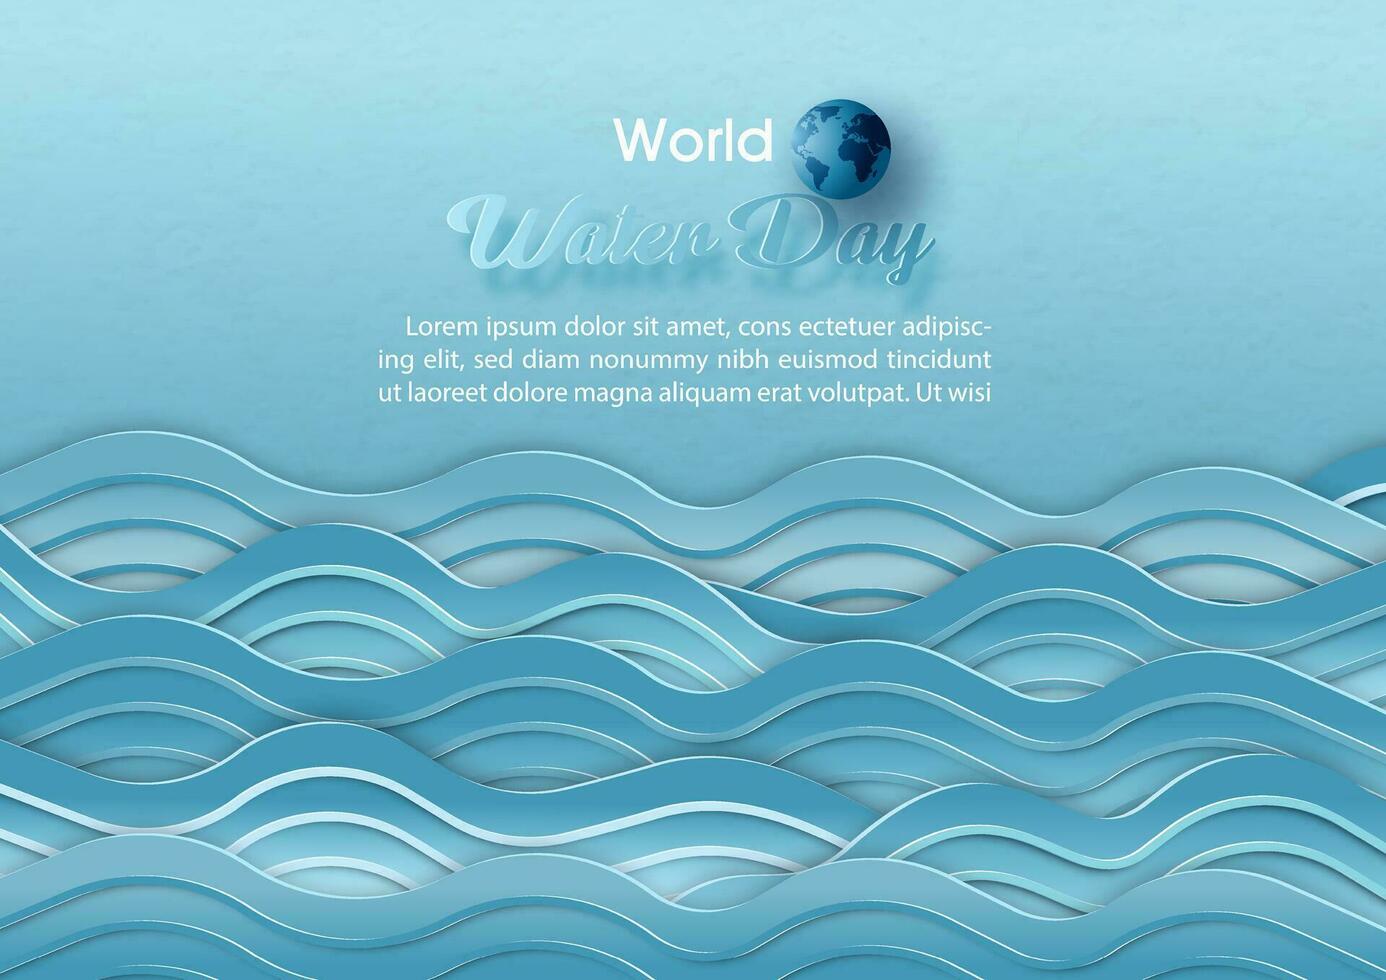 Meer Welle Muster im Papier Schnitt Stil mit Welt Wasser Tag Wortlaut und Beispiel Texte auf Blau Papier Muster Hintergrund. Plakat Kampagne von Wasser Tag im Vektor Design.